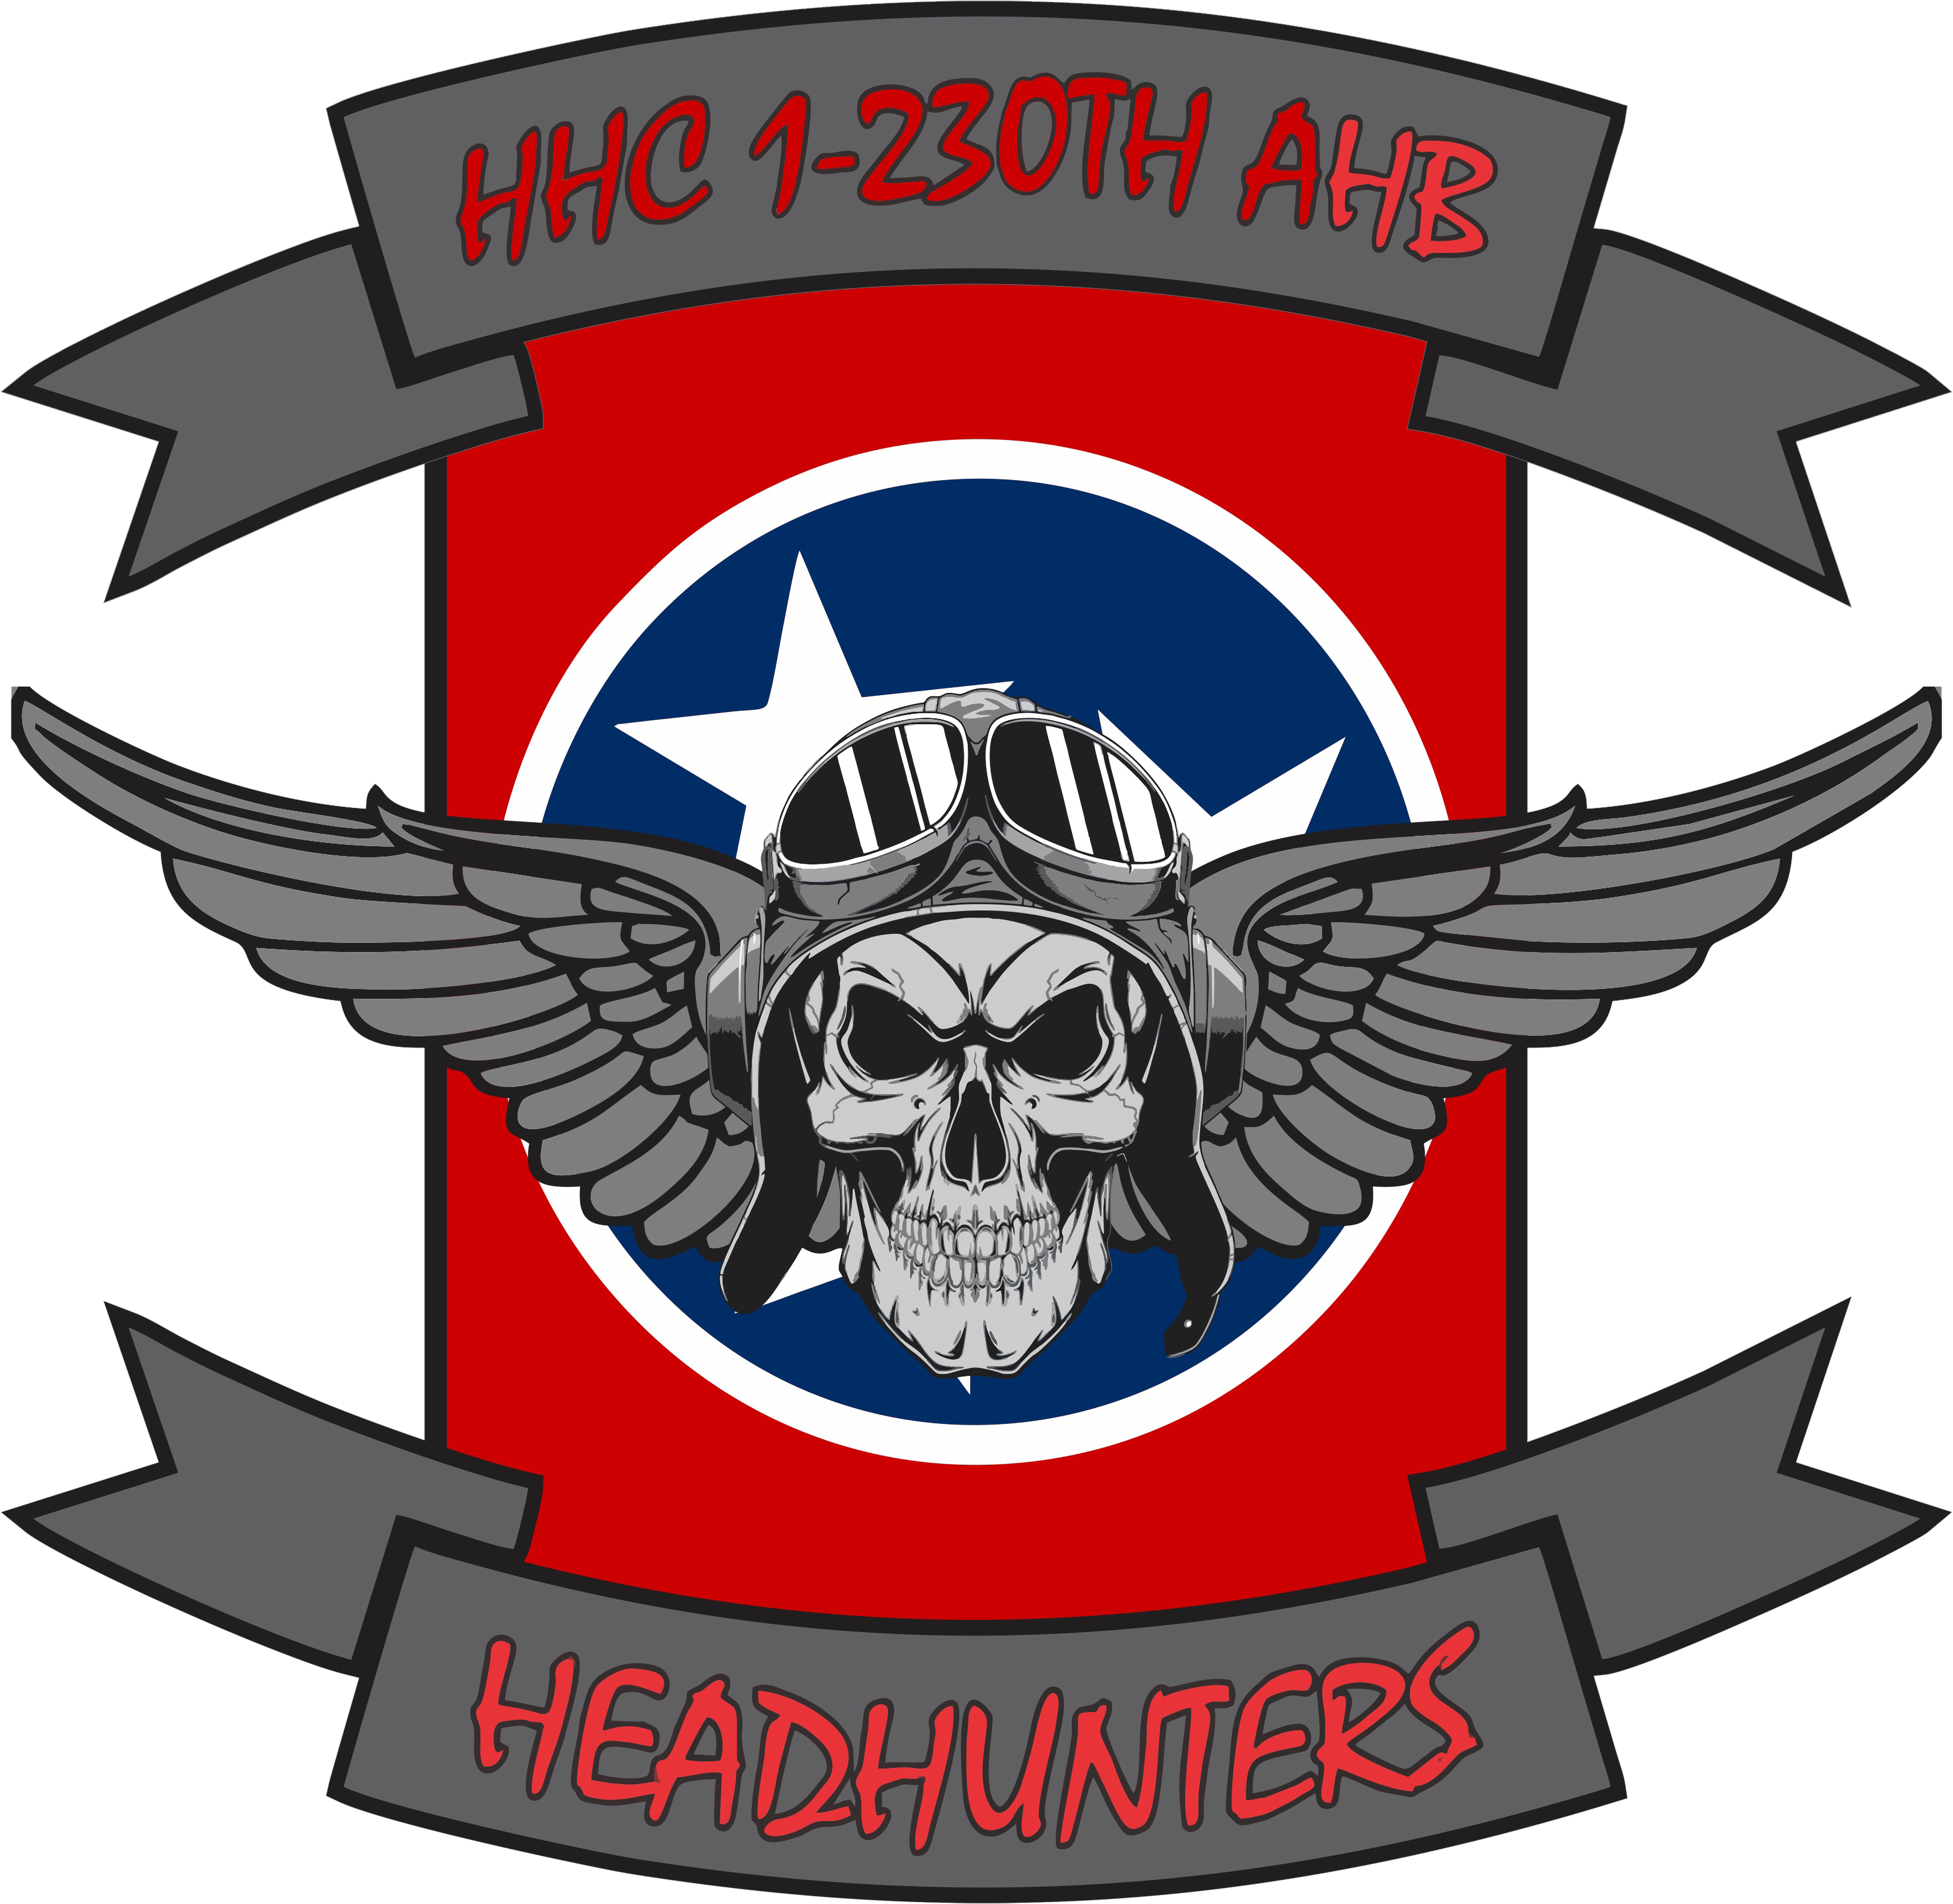 HHC, 1-230 AHB "Headhunters"